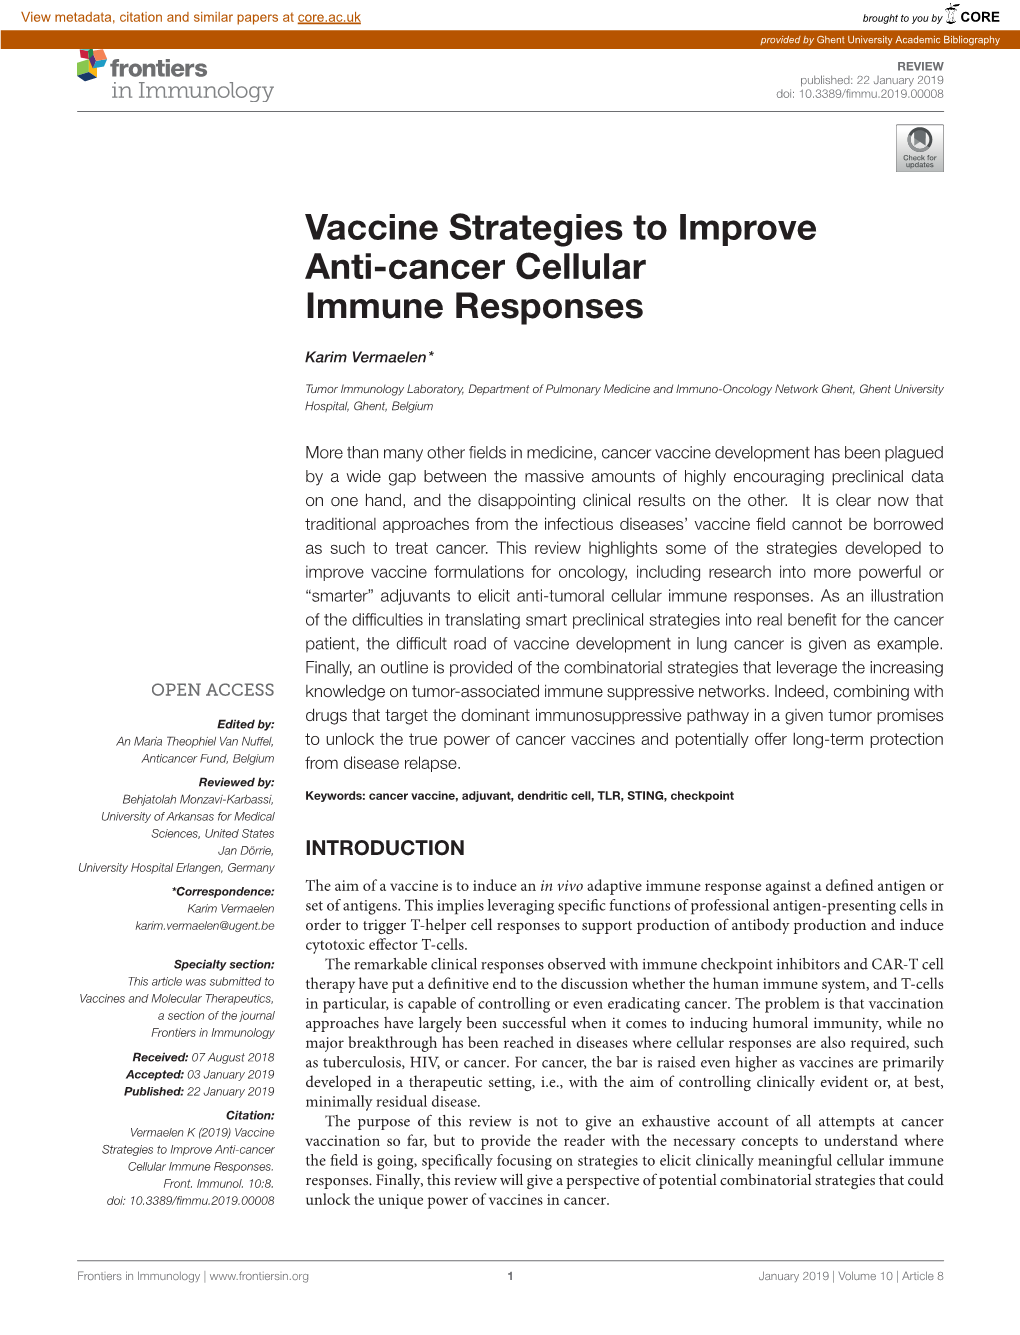 Vaccine Strategies to Improve Anti-Cancer Cellular Immune Responses